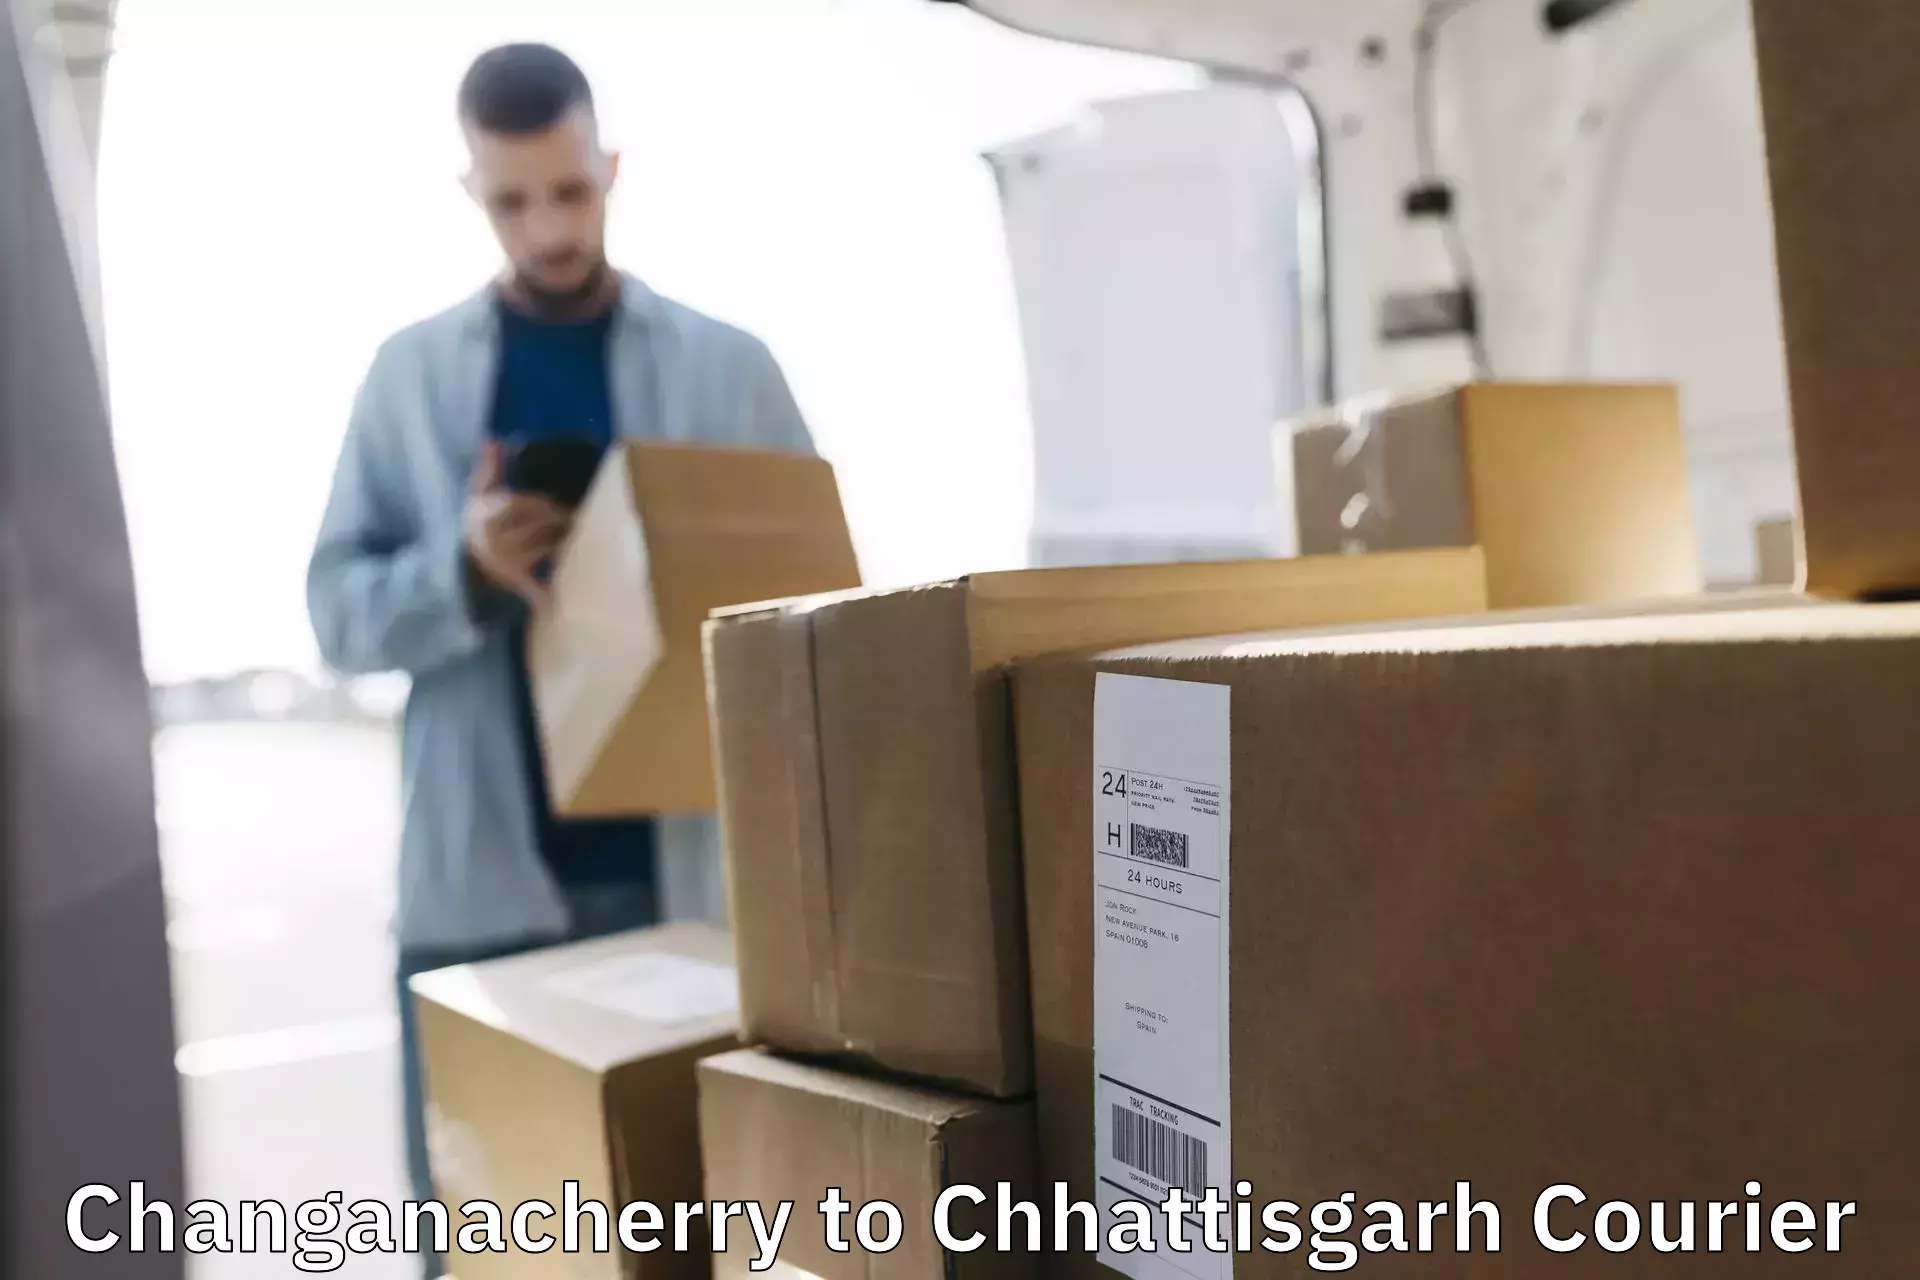 International courier networks Changanacherry to Bijapur Chhattisgarh